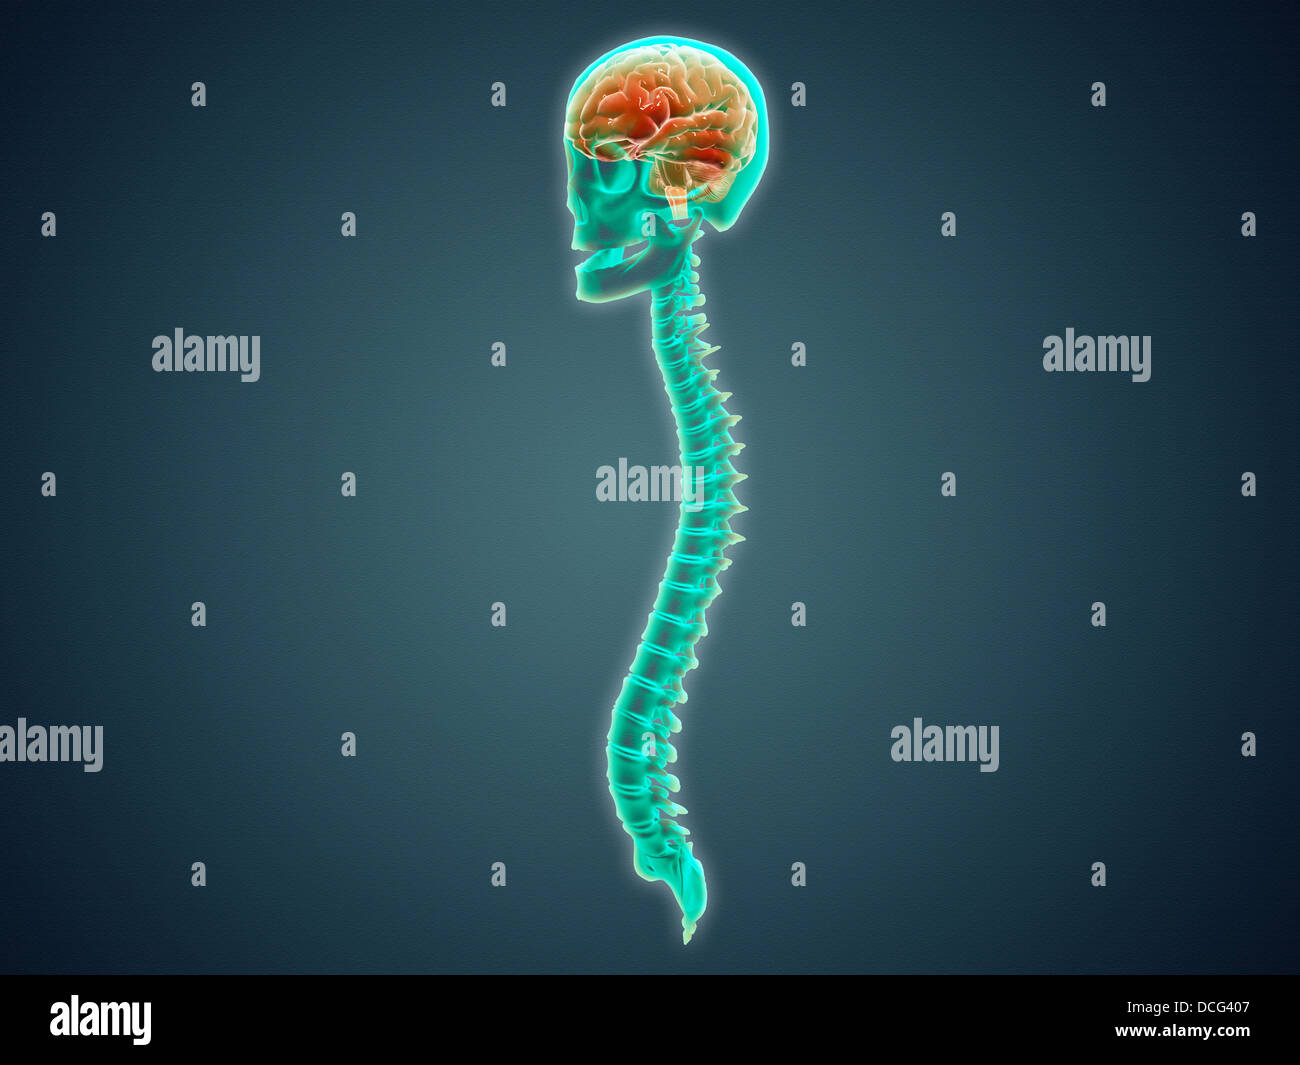 Immagine concettuale del cervello umano, del cranio e del midollo spinale. Foto Stock